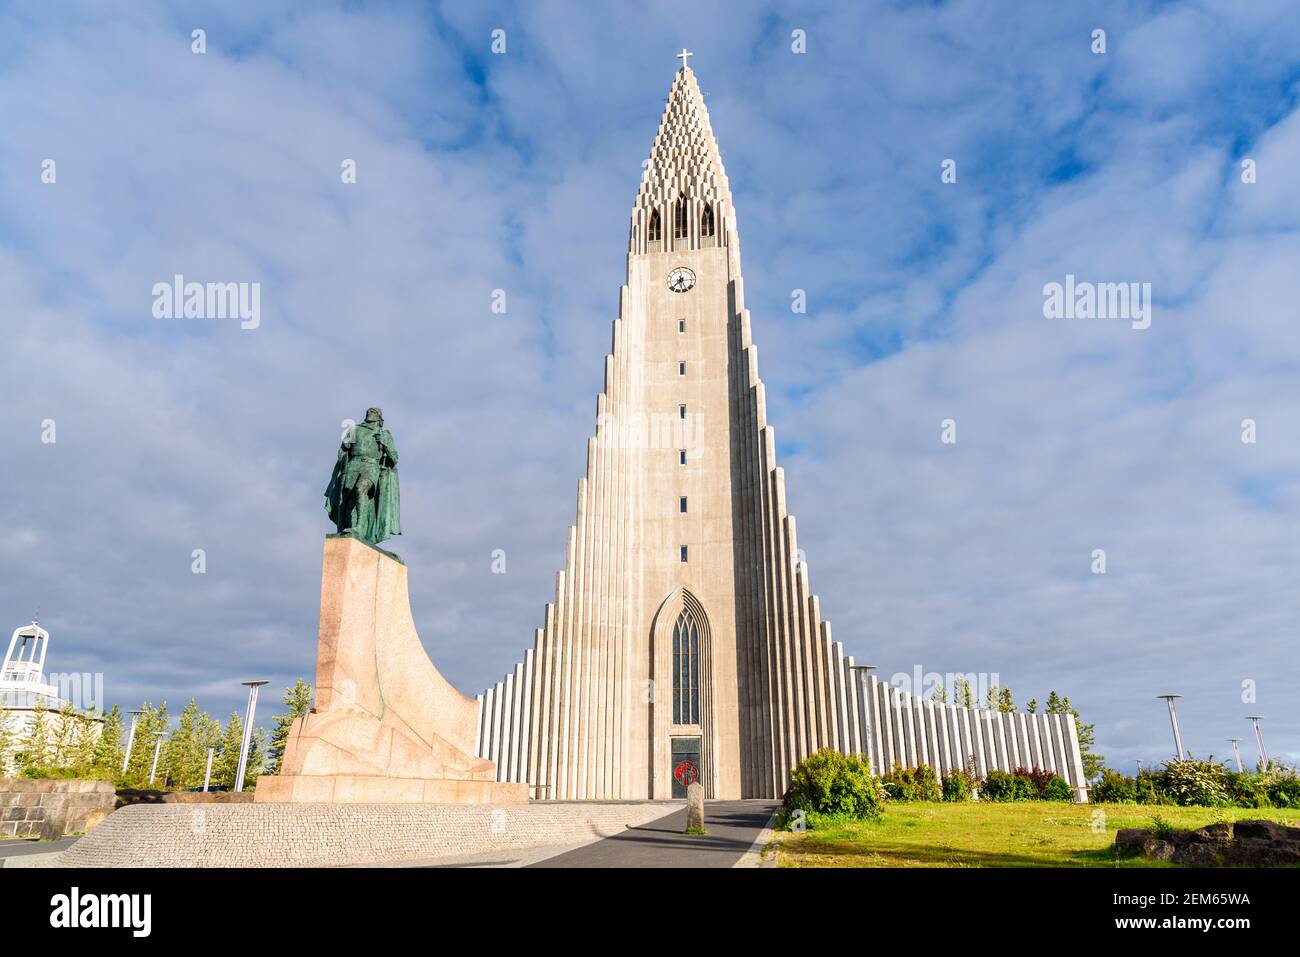 Vue sur l'église de Hallgrimskirkja avec la statue de Leif Eriksson dans le centre de Reykjavik, en Islande, lors d'une soirée d'été ensoleillée Banque D'Images